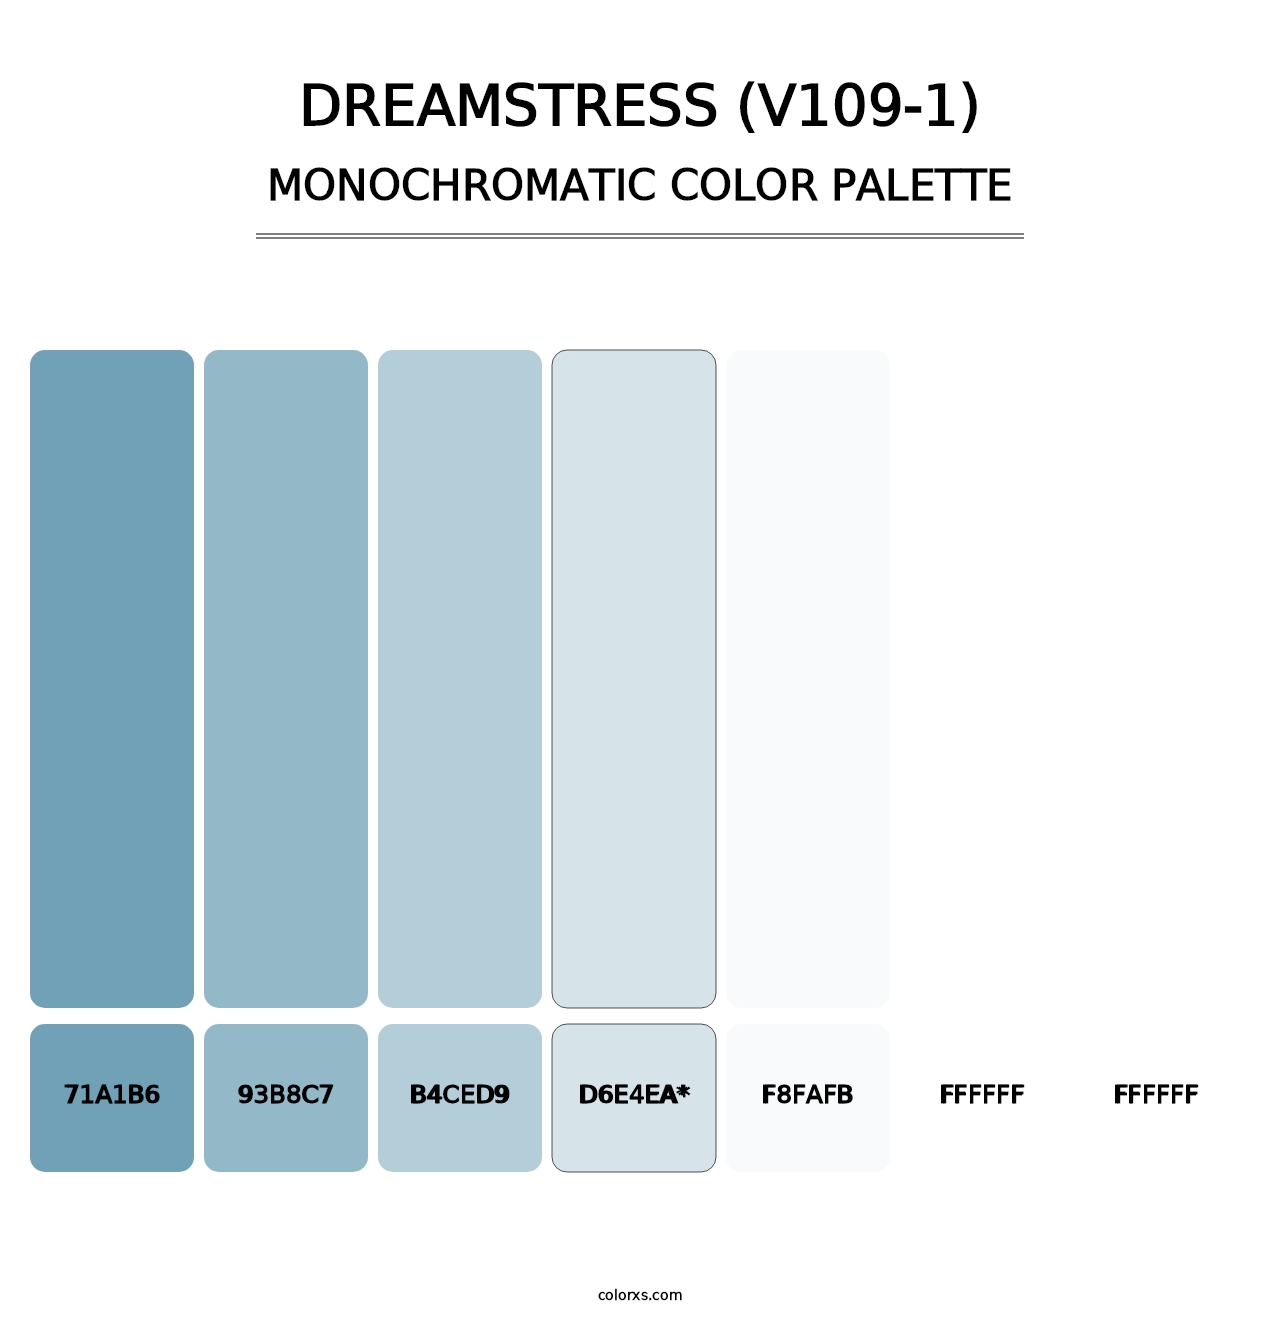 Dreamstress (V109-1) - Monochromatic Color Palette